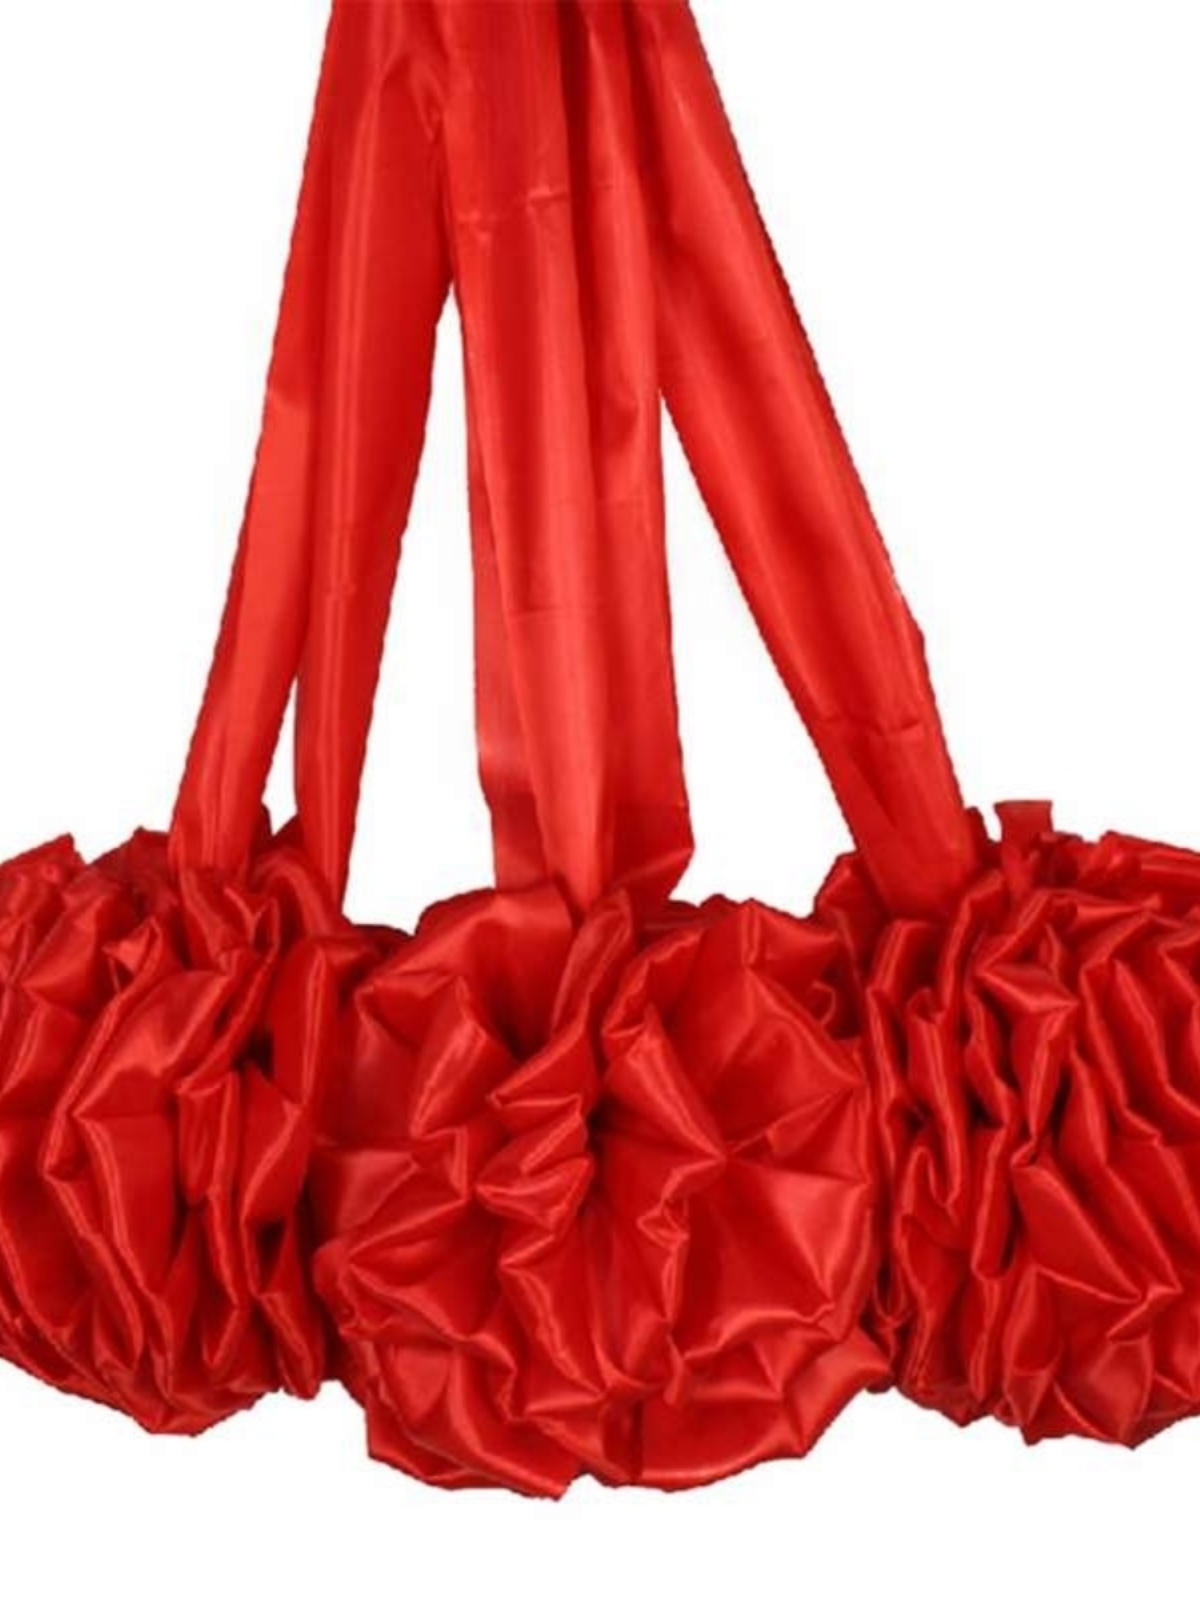 开业剪彩揭牌揭幕红布大红色花球波浪型庆典活动奠基仪式道具套装